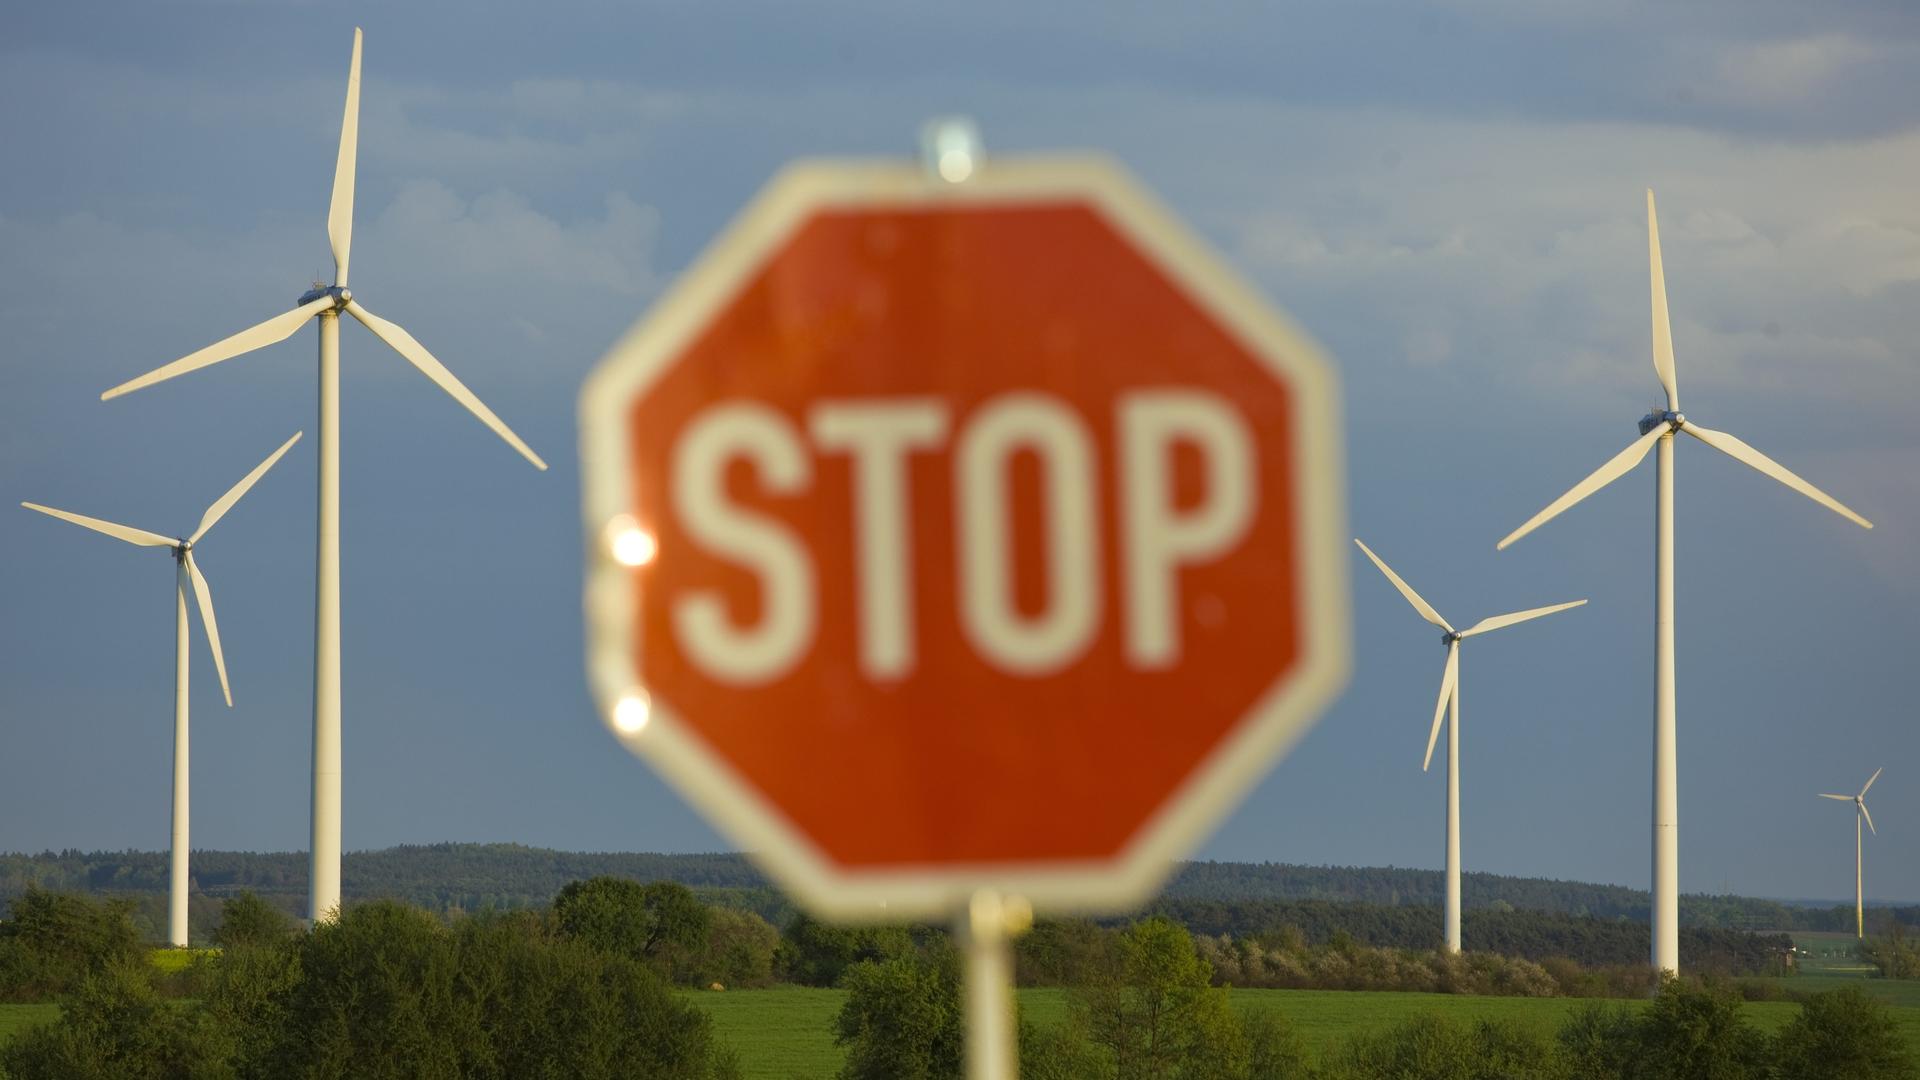 Ein Stop-Schild steht an einer Straße vor Windrädern